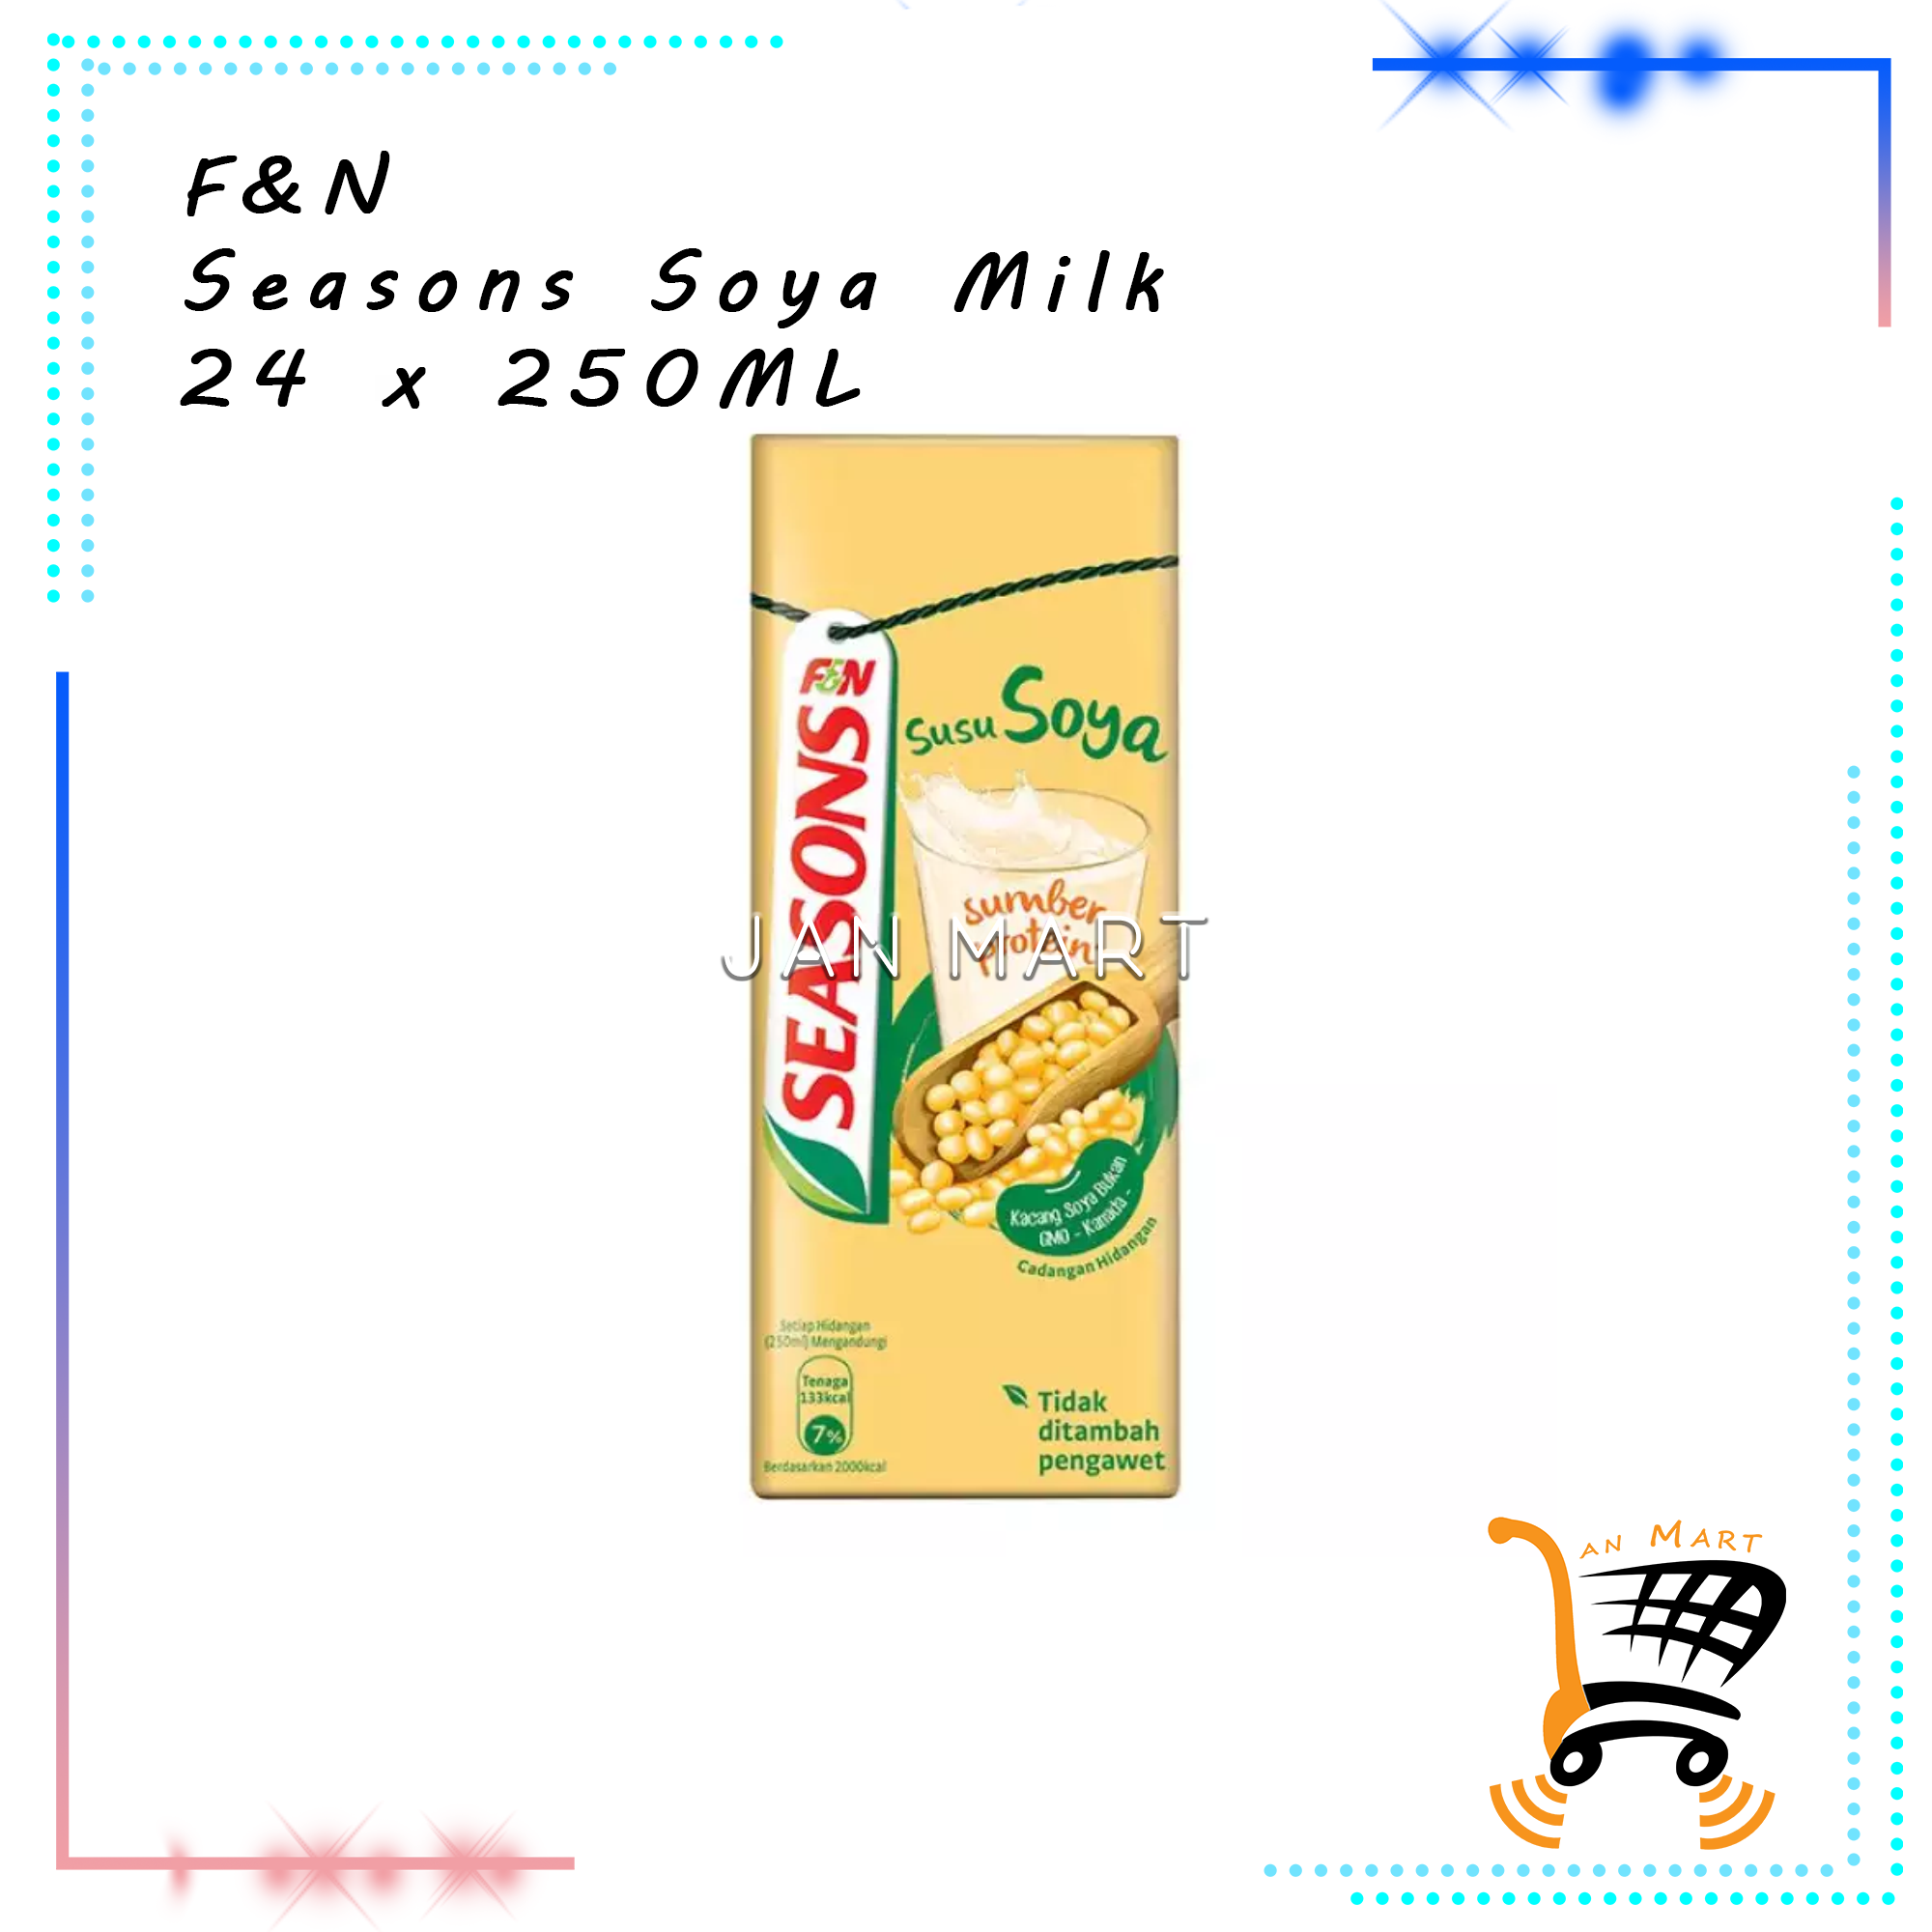 F&N Seasons Soya Milk 24 x 250ML